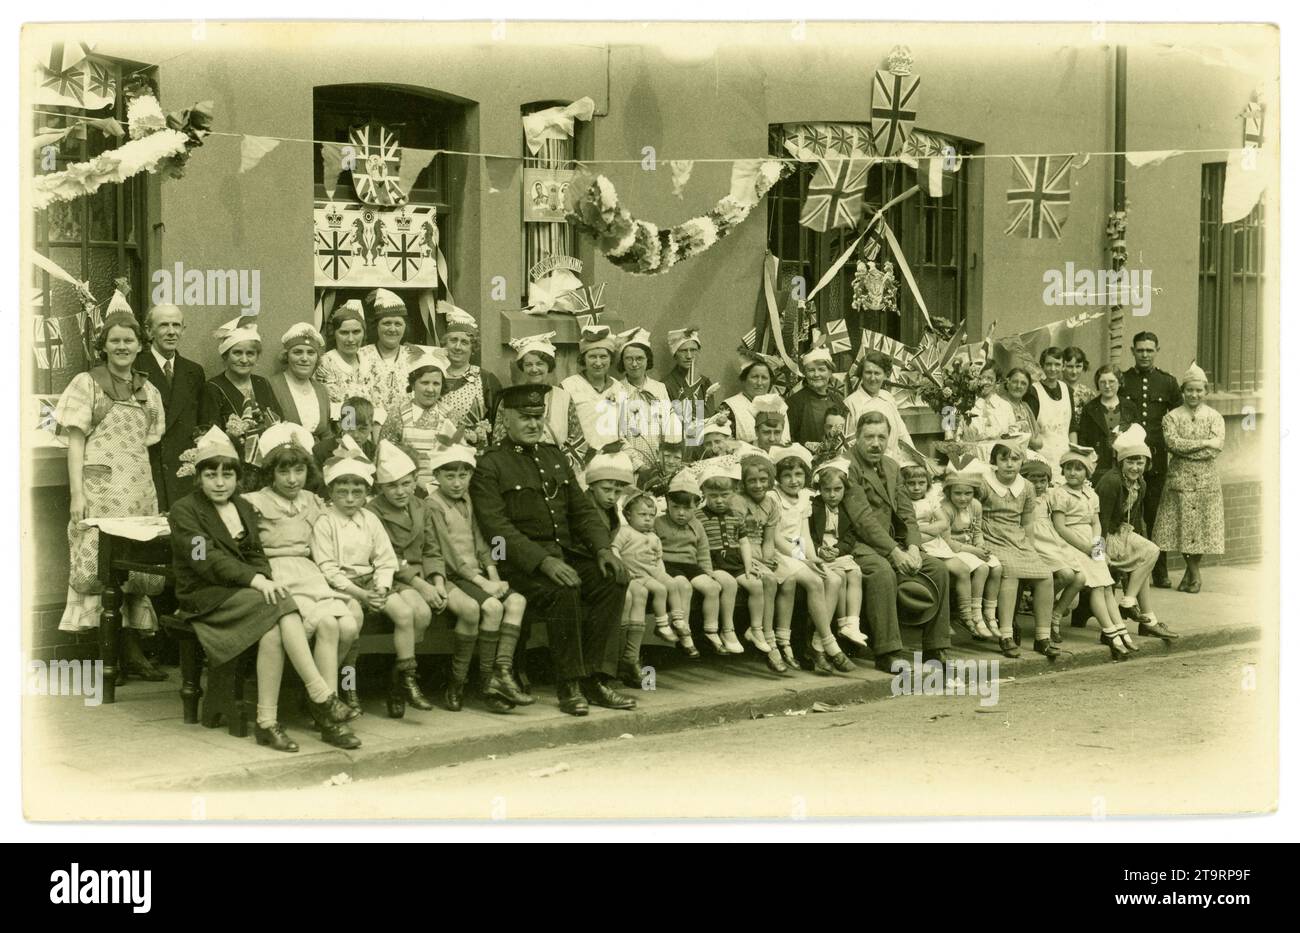 Carte postale originale de l'ère des années 1930, charmante image de jeunes enfants souriants portant des chapeaux de fête, posant pour une photo dans leur rue avec leurs parents / adultes, avant une fête de thé de célébration, pour célébrer le couronnement de George V1 (le père de la défunte reine Elizabeth) beaucoup de bandoulière, drapeaux, bannières et chapeaux de fête et personnages. Les modes de l'époque. Deux policiers du sud du pays de Galles assistent pour s'assurer qu'ils ne sont pas tous trop excités. Eleanor Street, Tonypandy, Rhondda, sud du pays de Galles, Royaume-Uni 1937. Banque D'Images